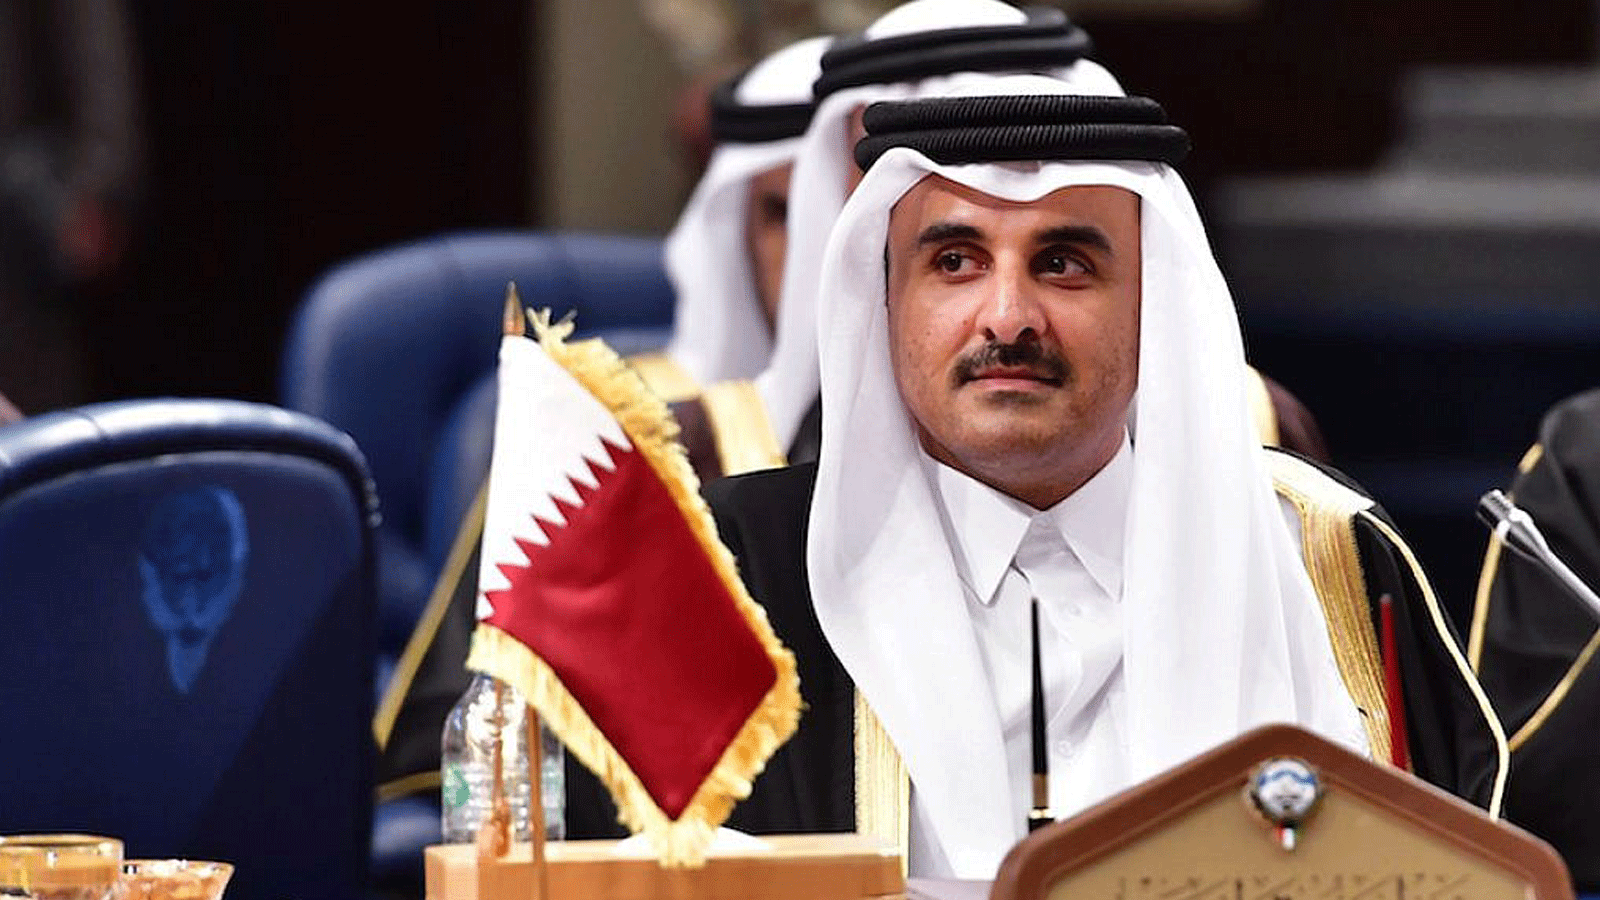 أمير قطر الشيخ تميم بن حمد آل ثاني يحضر قمة مجلس التعاون الخليجي في قصر بيان في مدينة الكويت، 5 كانون الأول/ديسمبر 2017